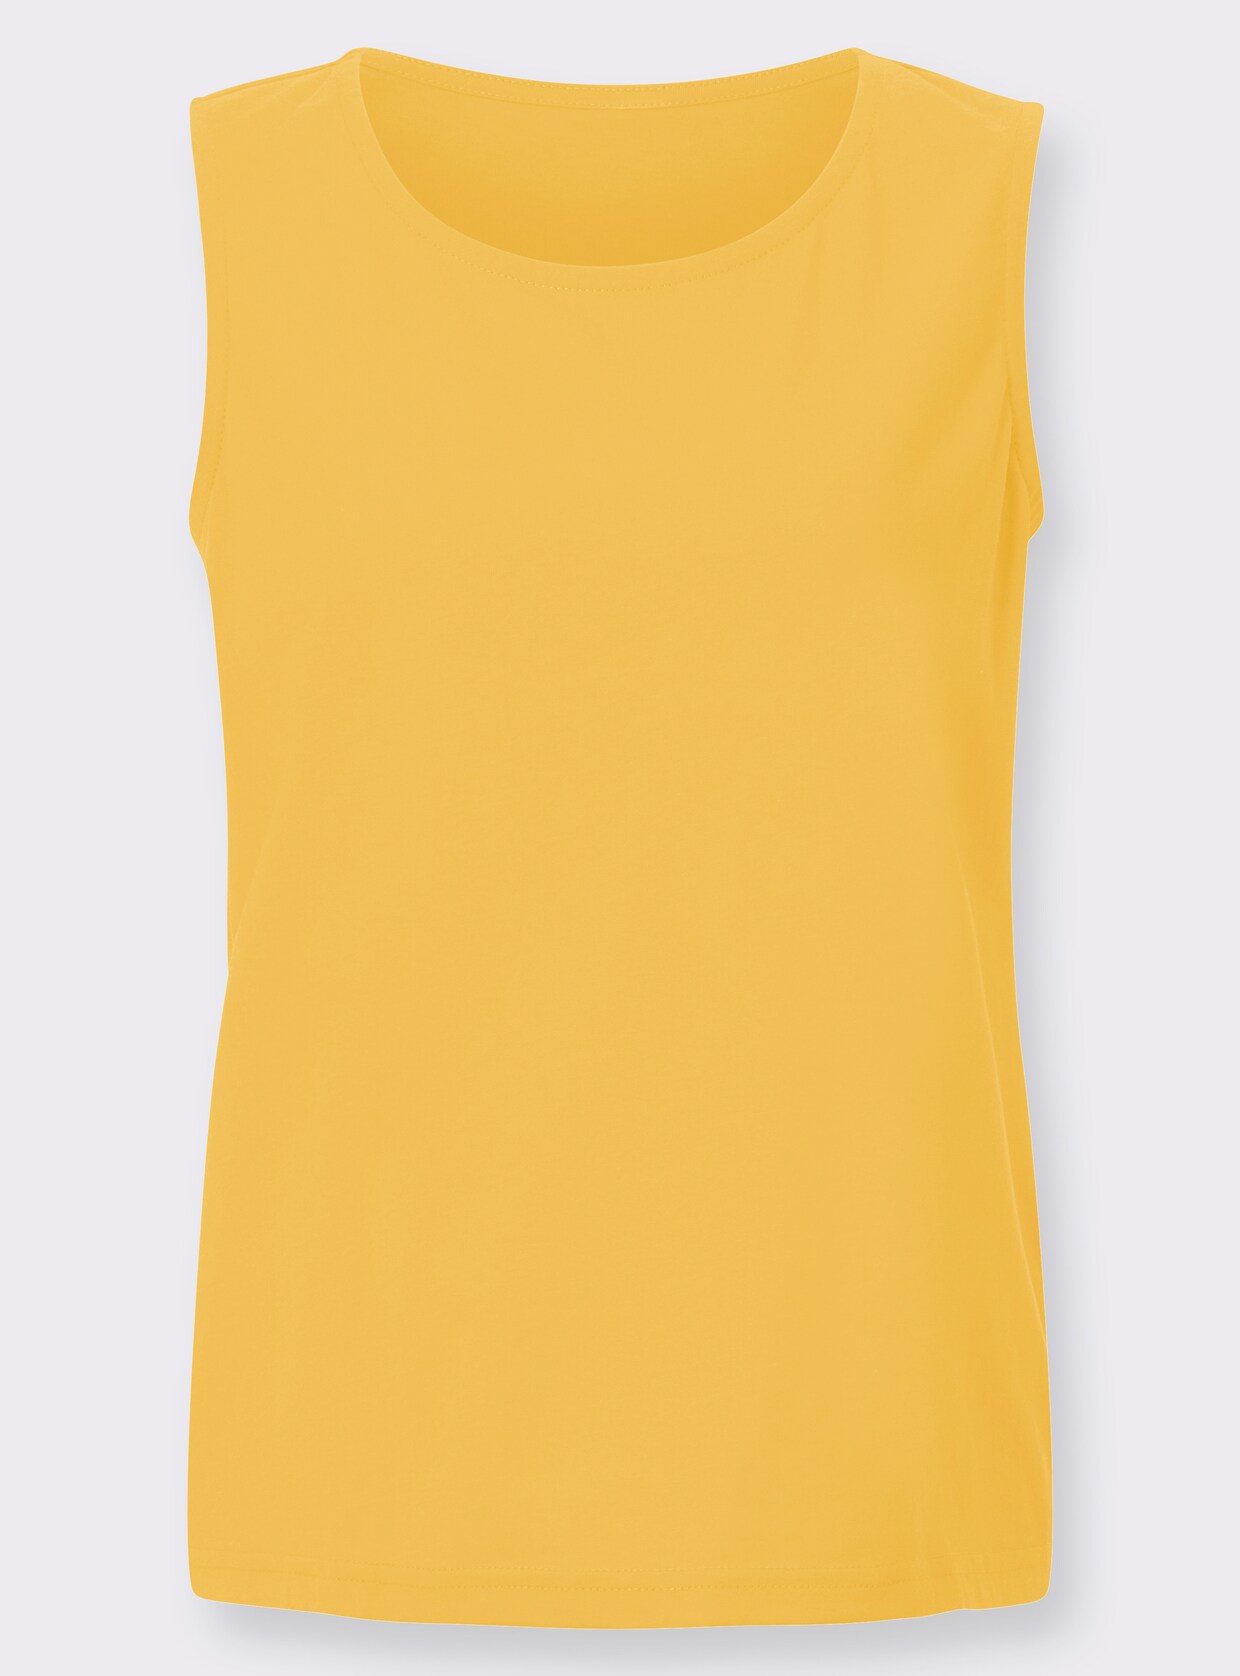 Shirttop - geel + geel gestippeld